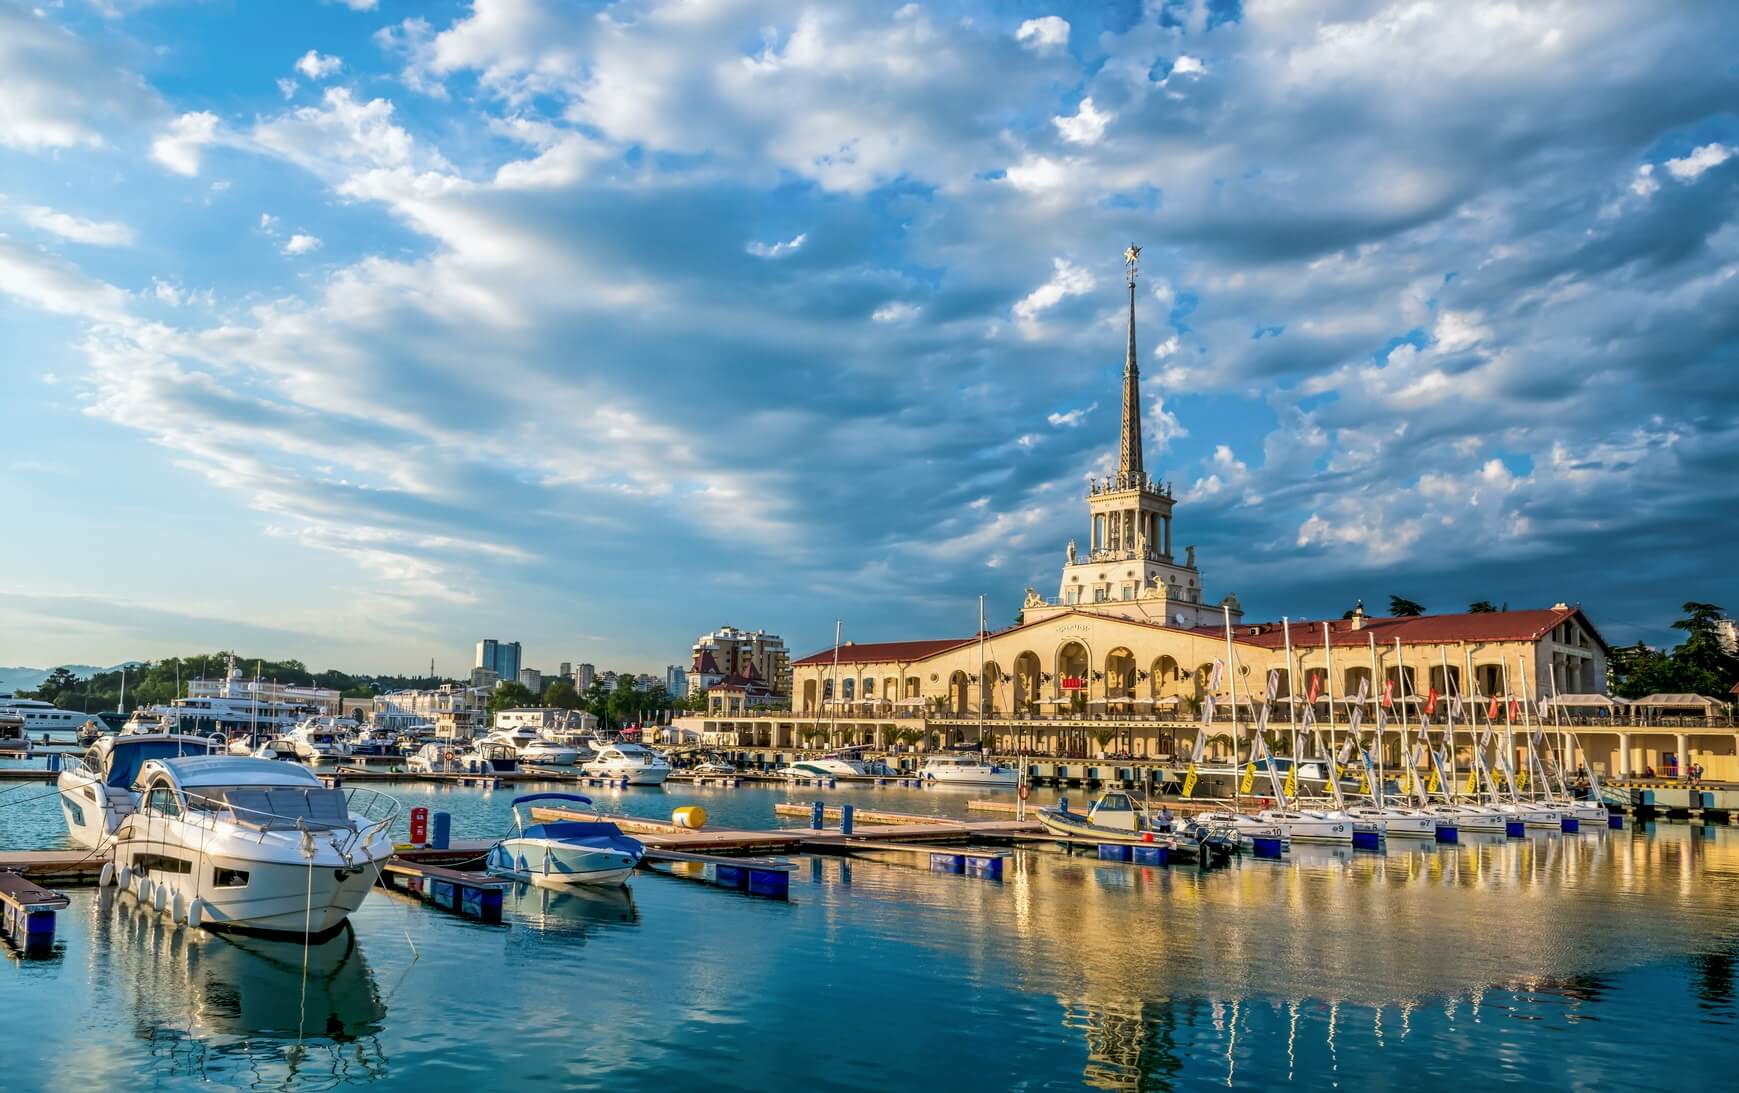 Обзоры отелей, Сиде, Турция - Тур в Сочи из Москвы от 6950 рублей с человека на 5 ночей!